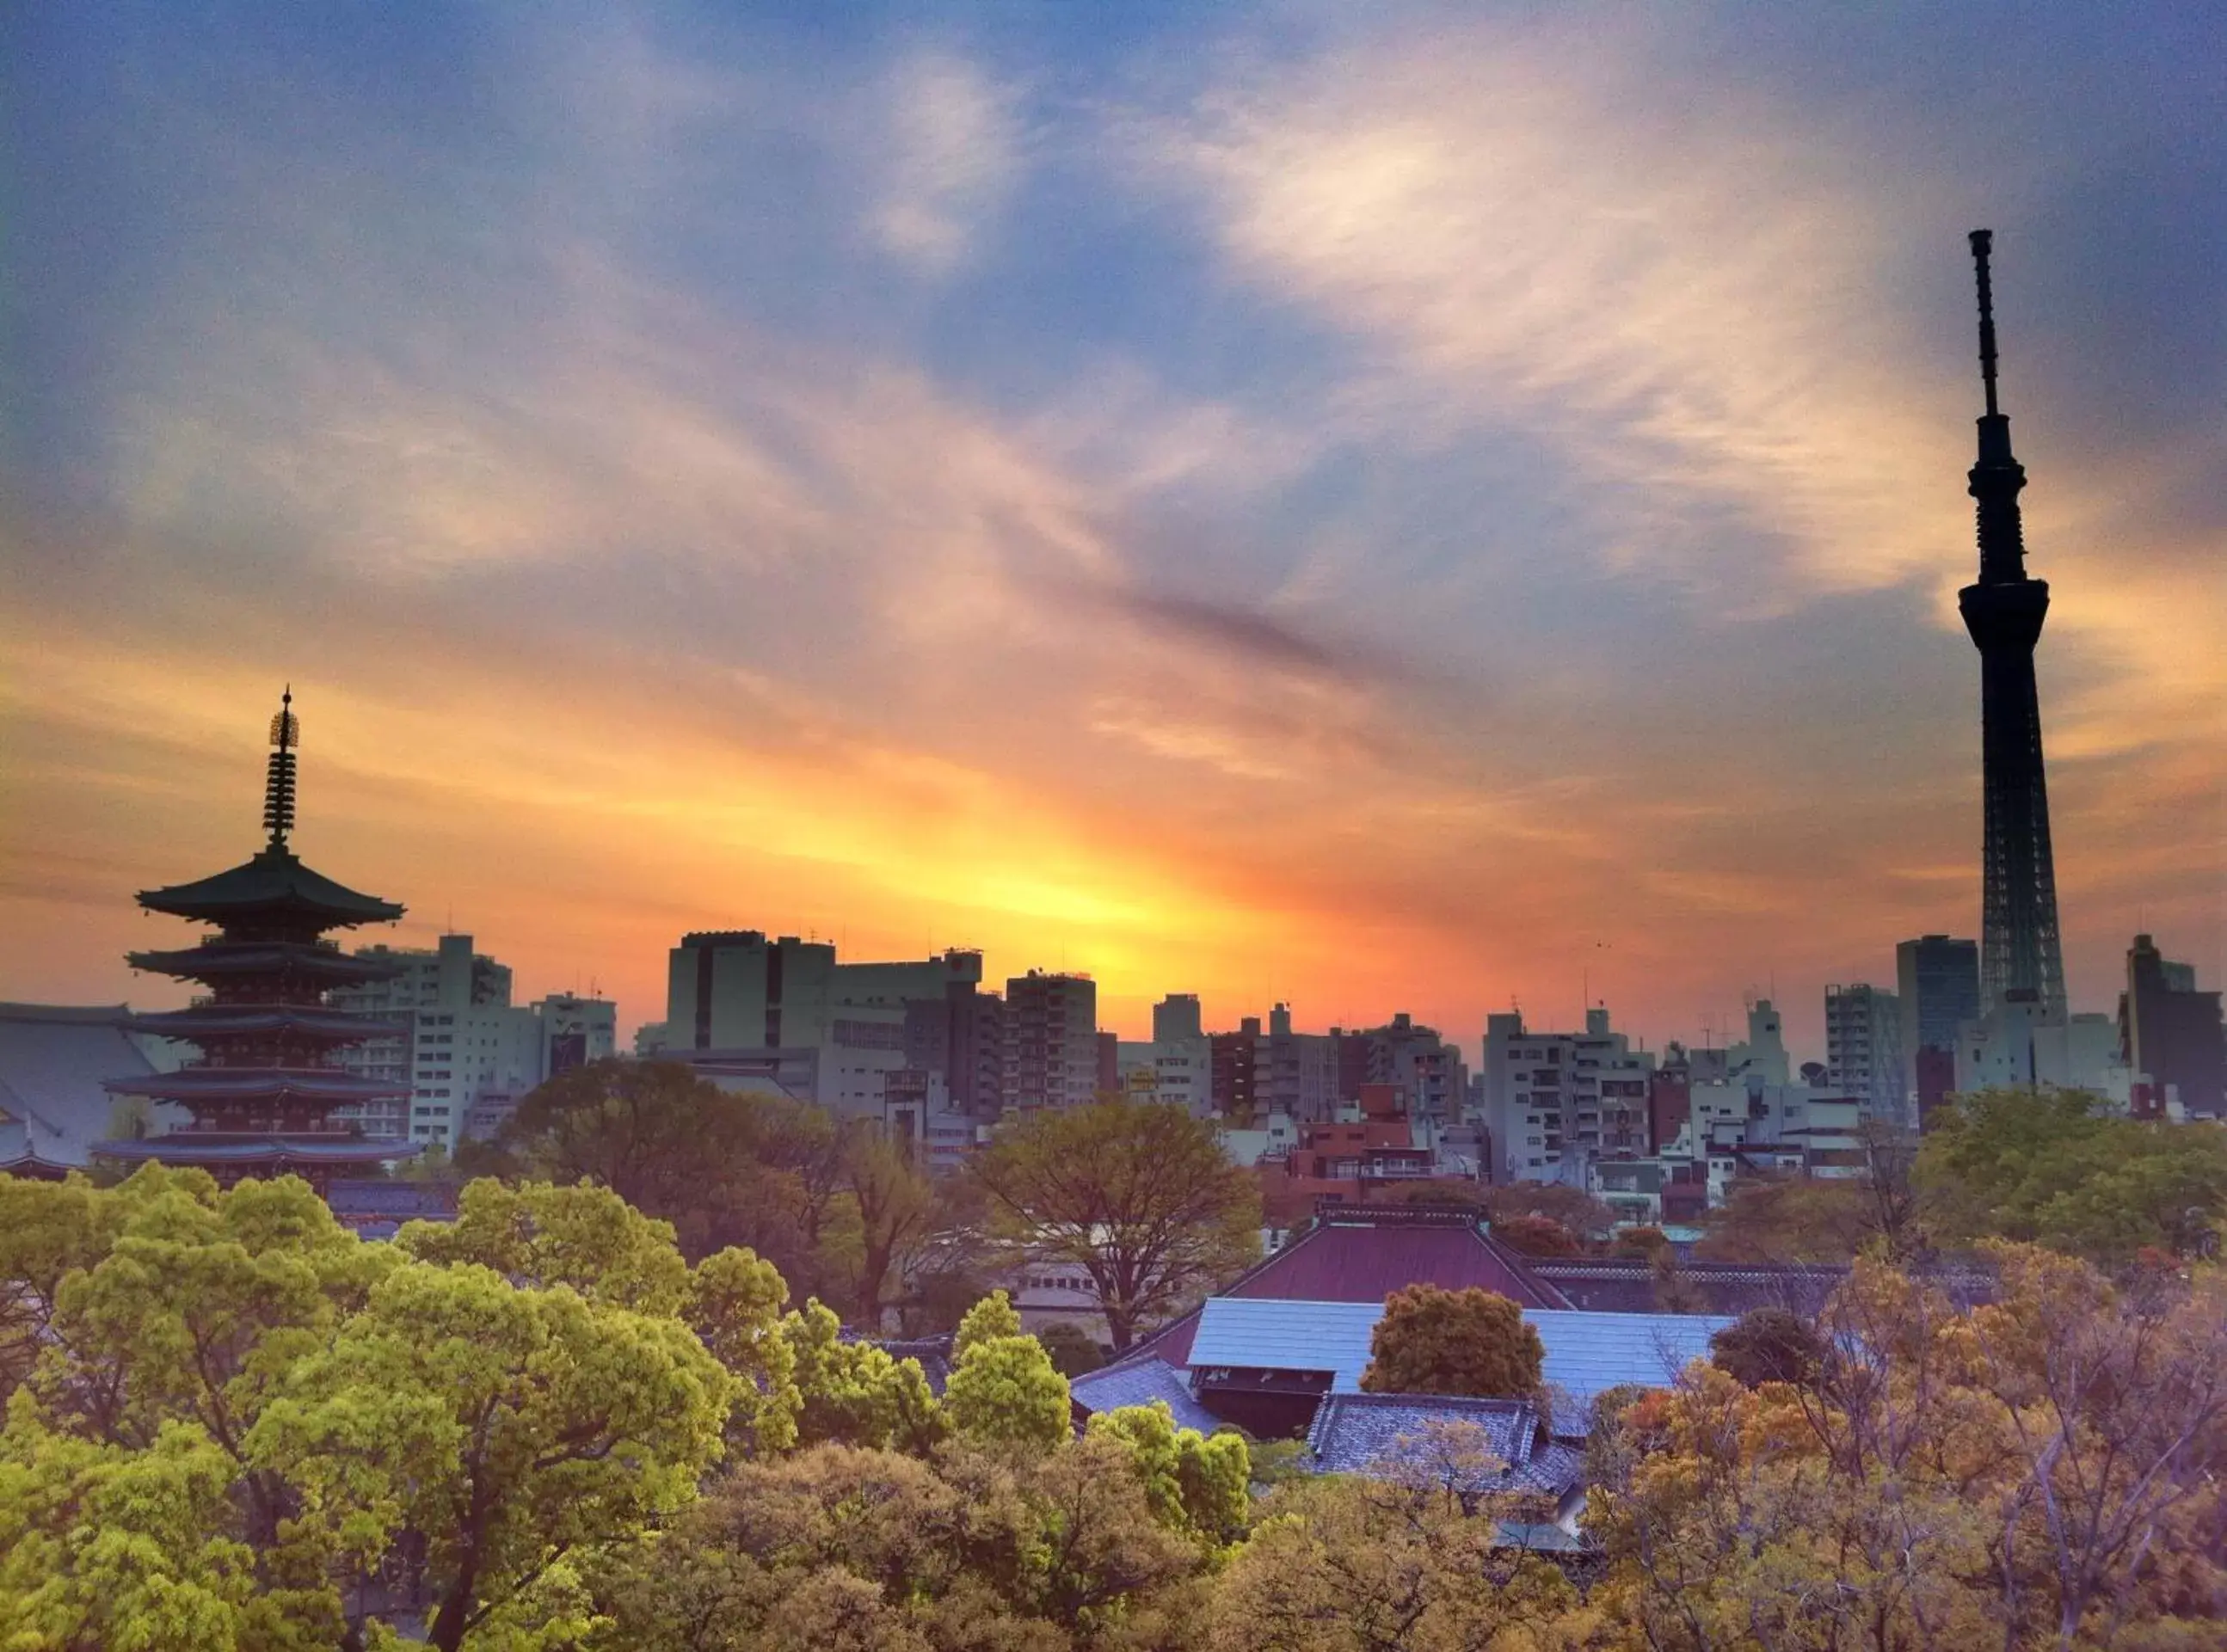 City view in B:CONTE Asakusa